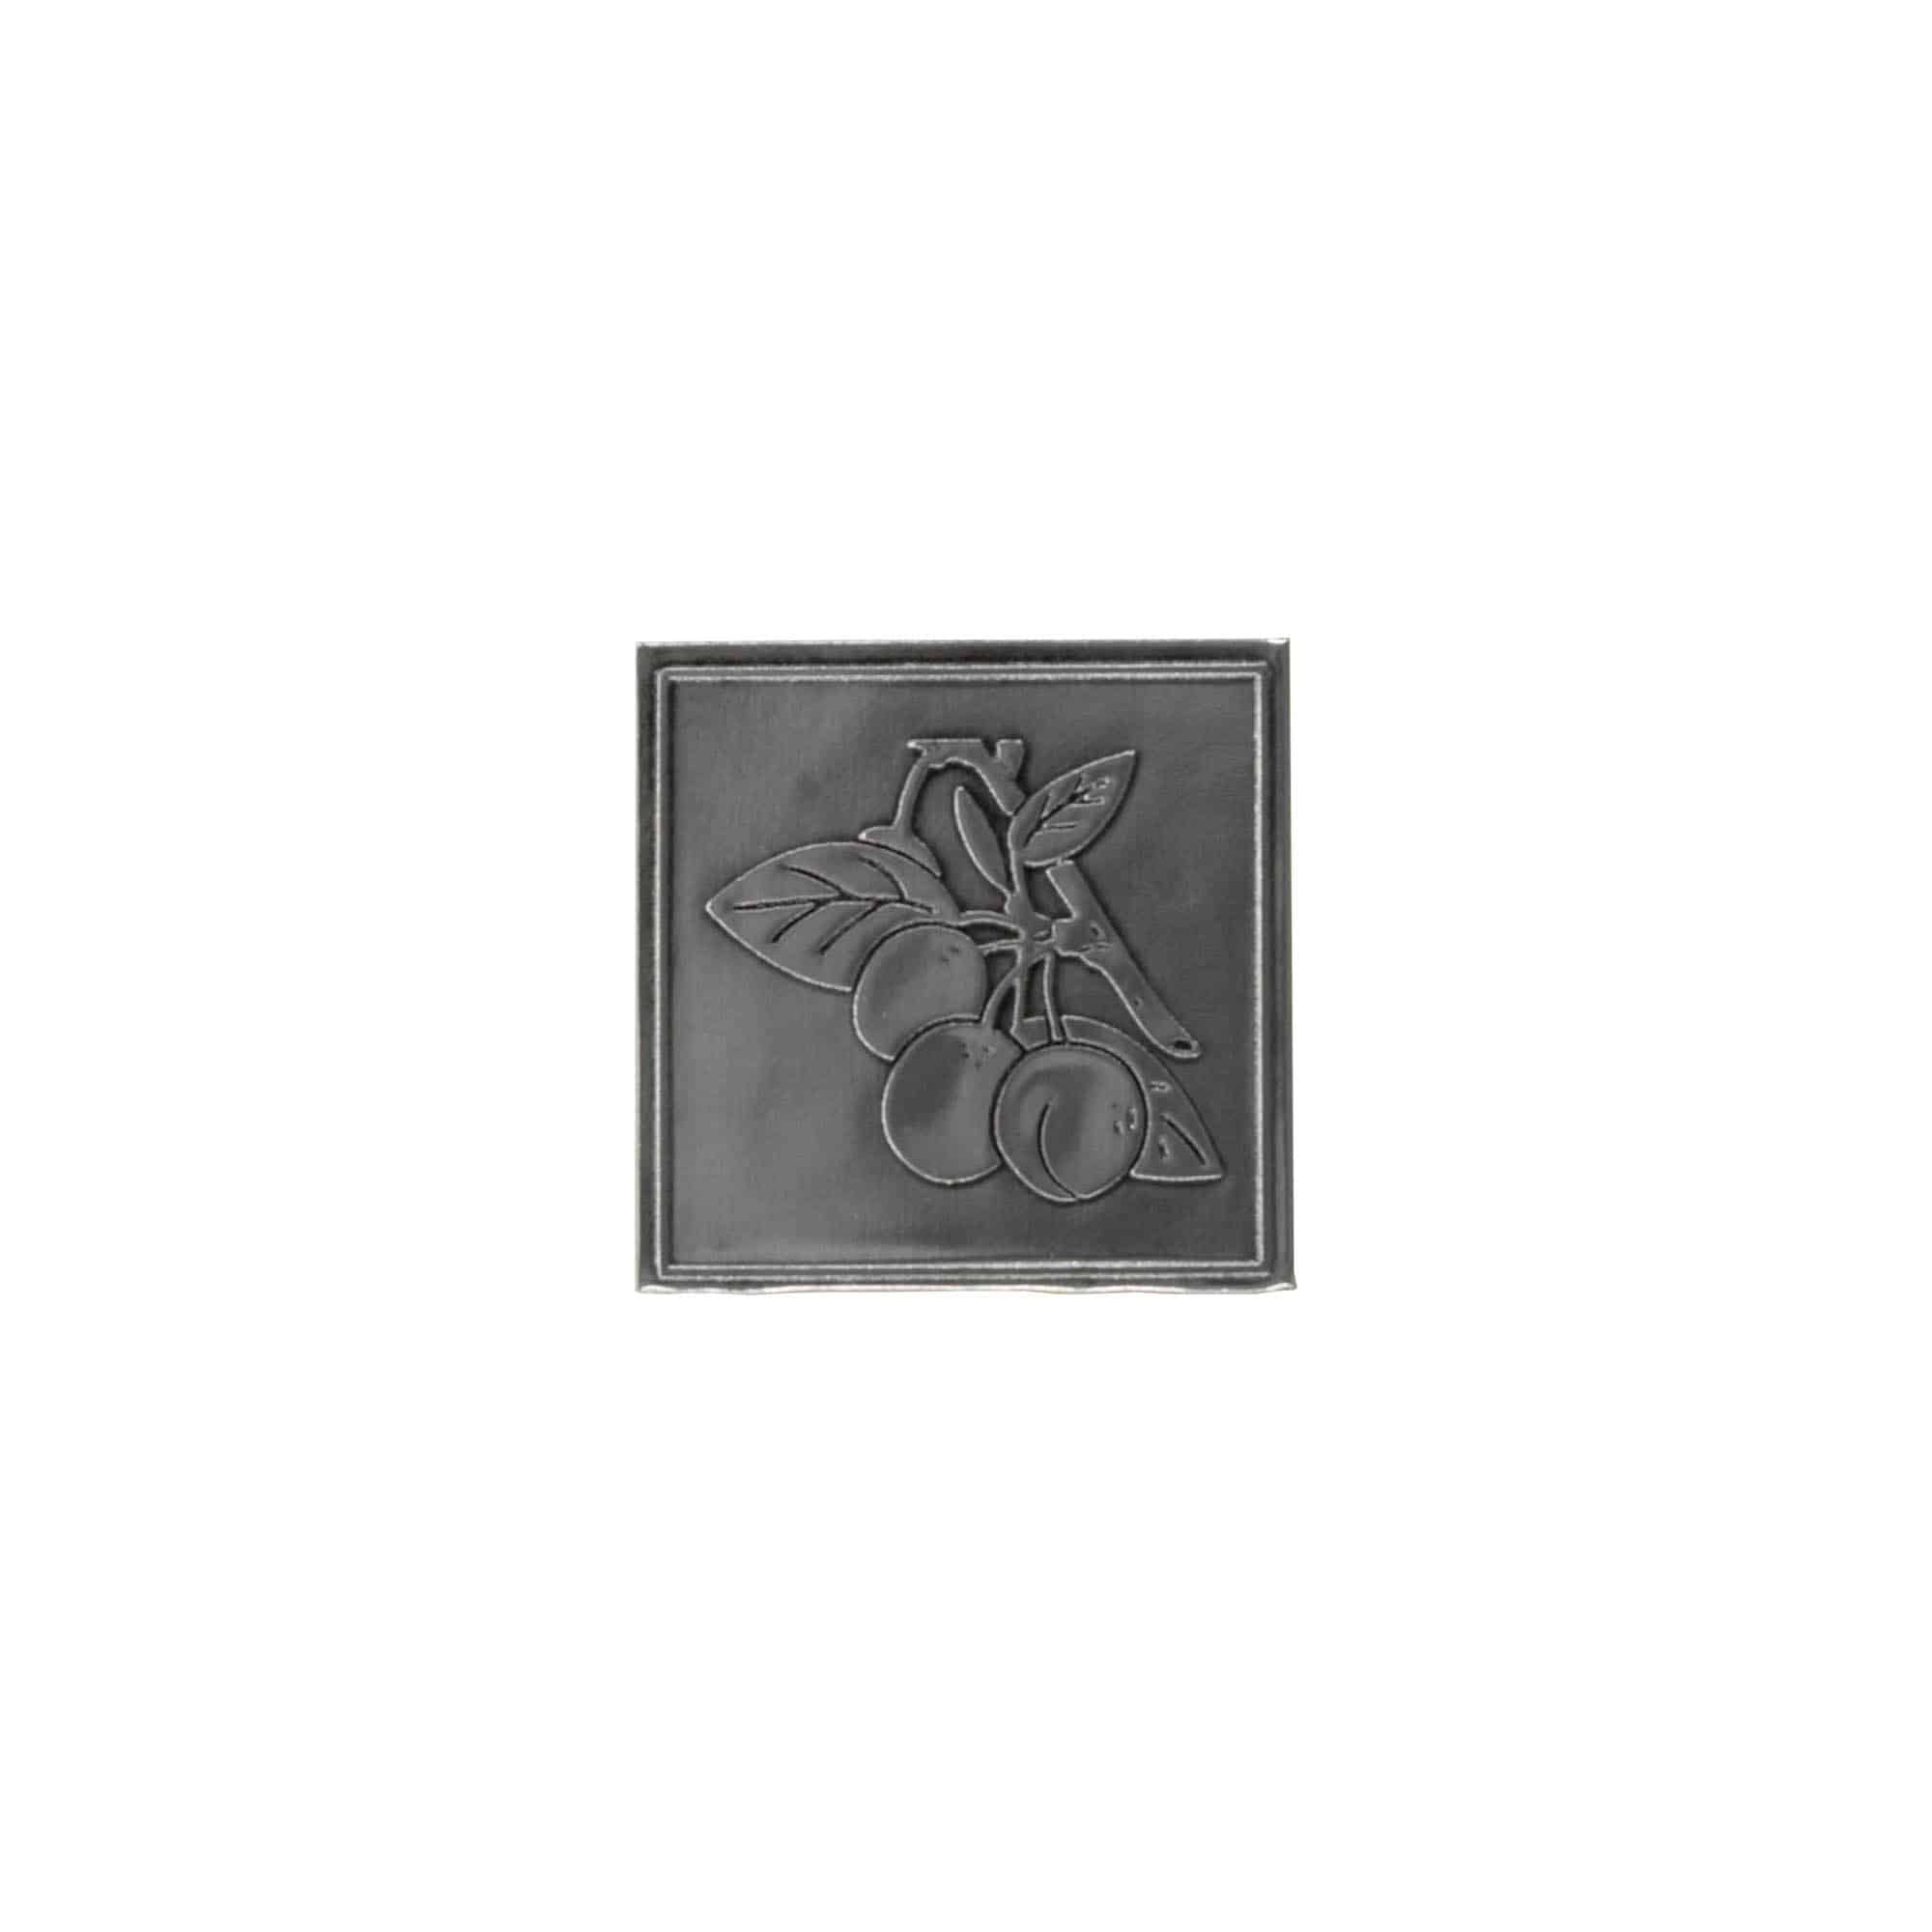 Cínový štítek 'Špendlík', čtvercový, kov, stříbrný